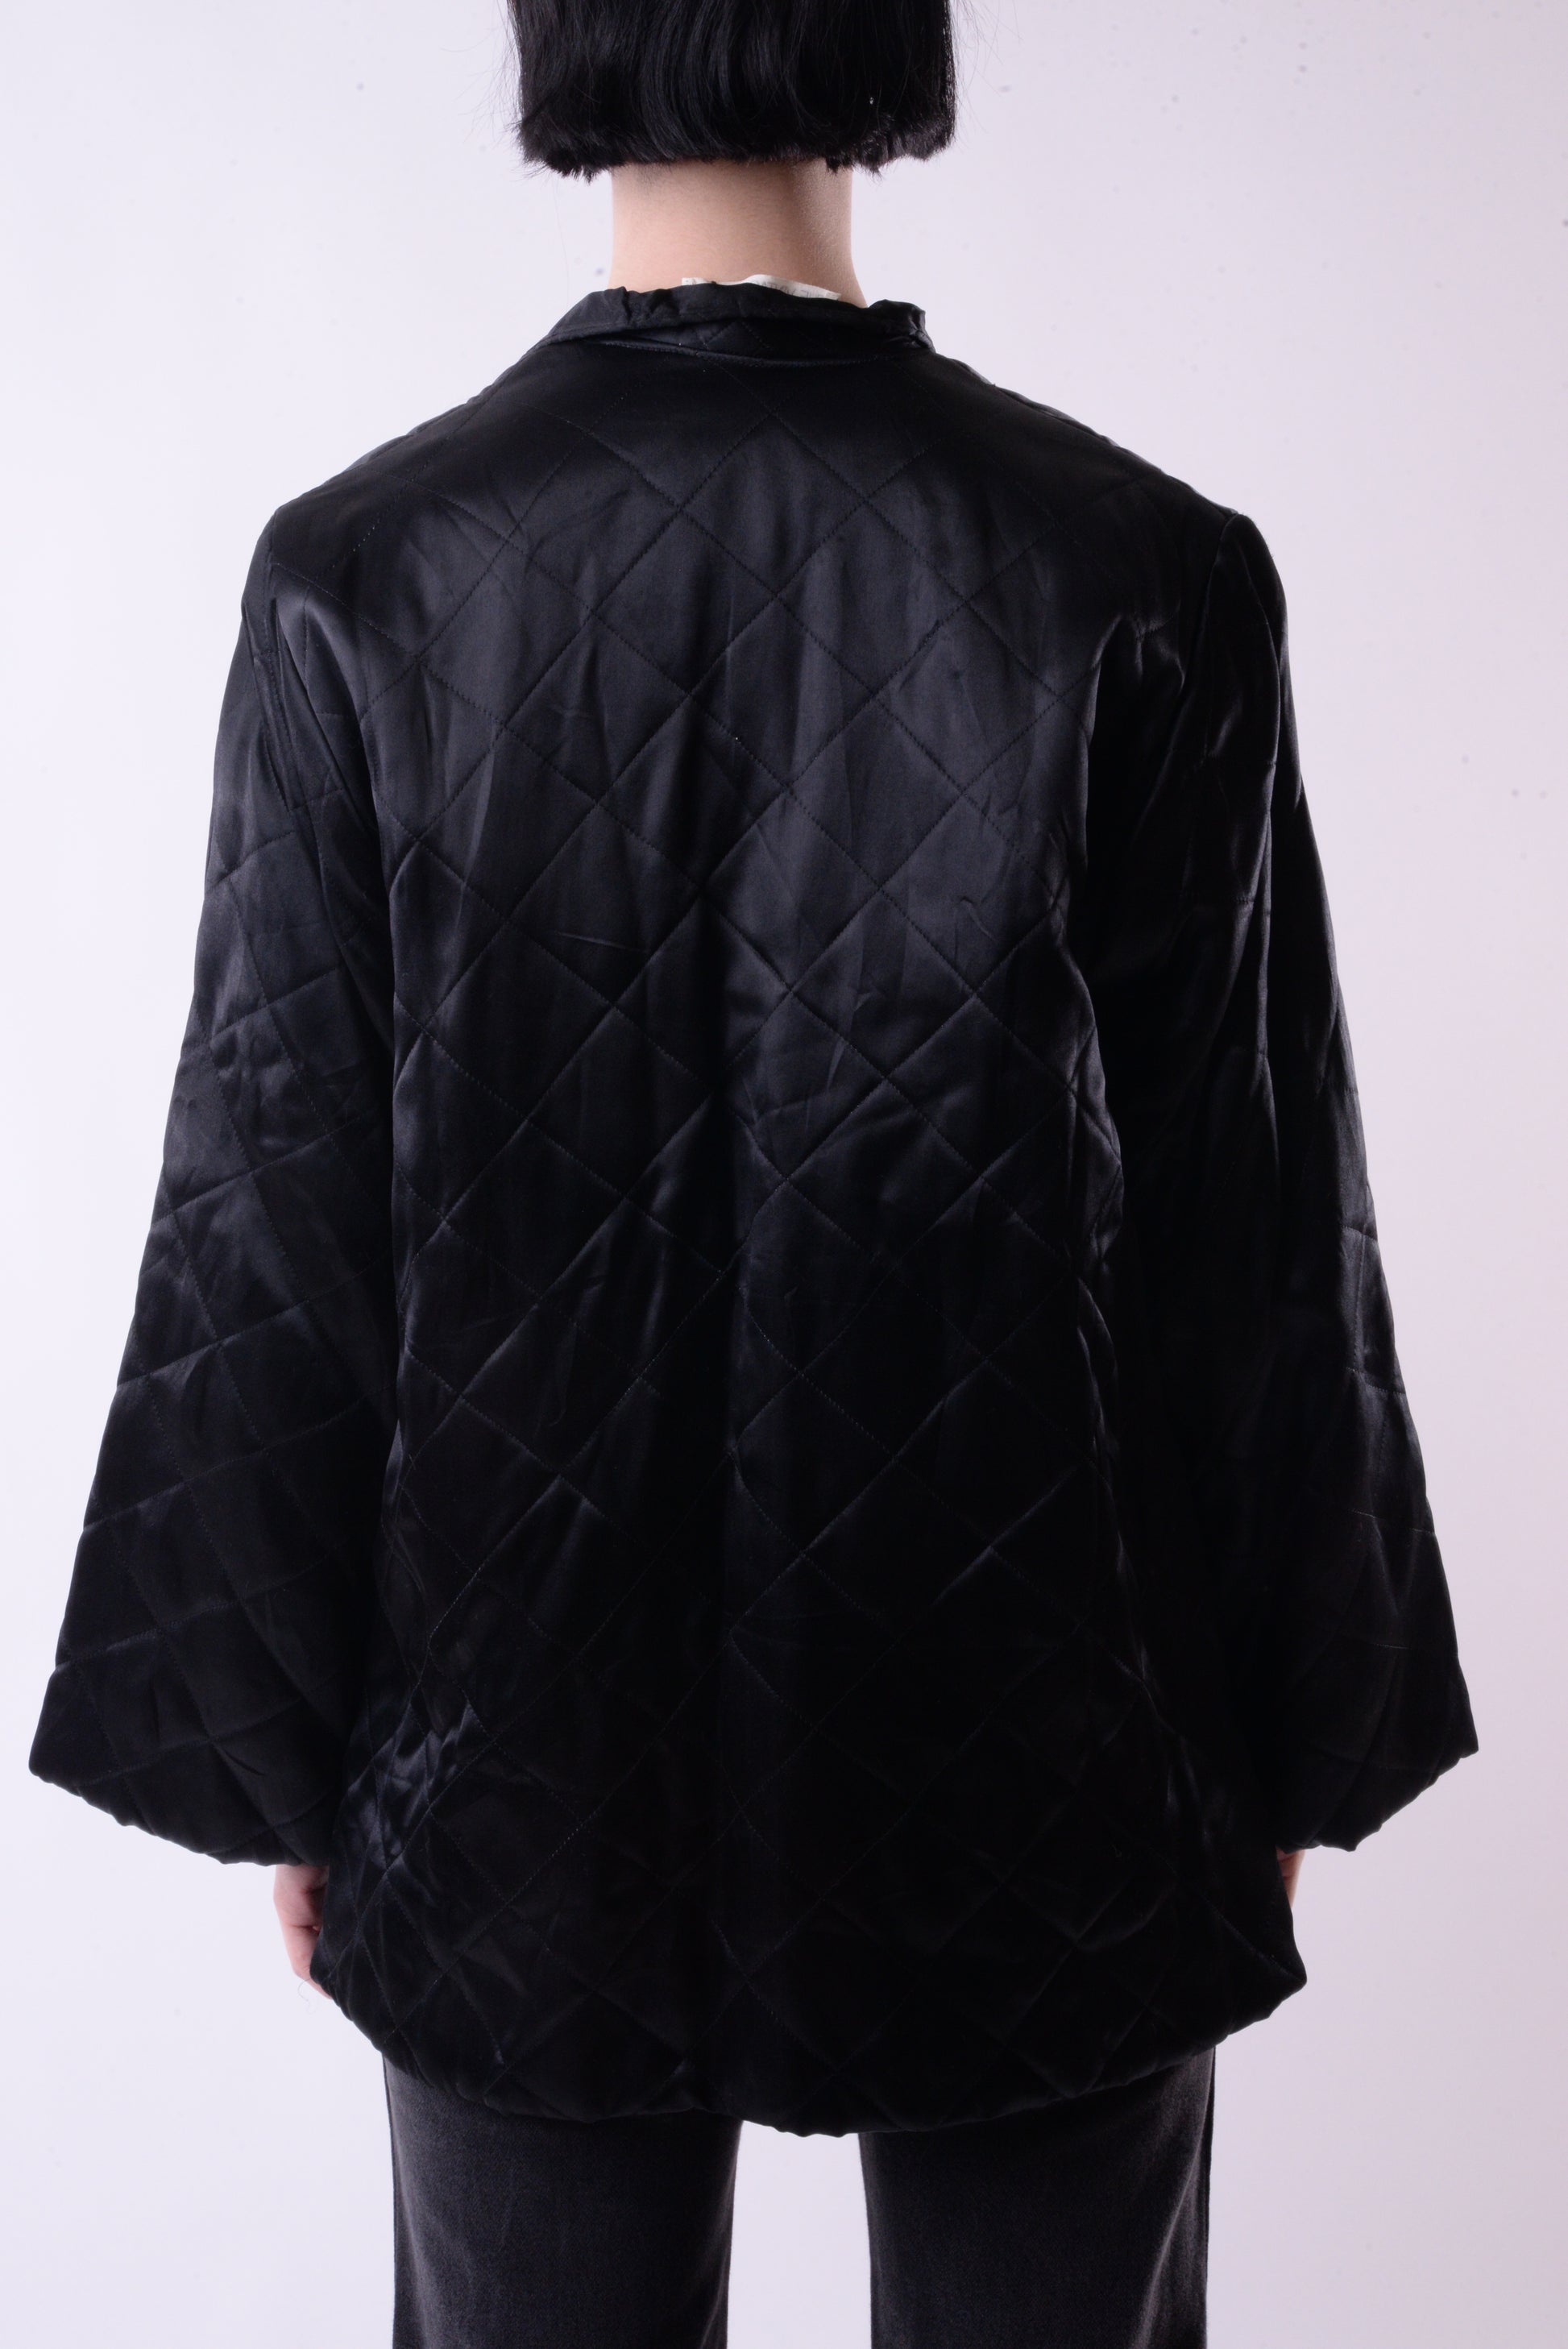 Embellished Black Dragon Jacket